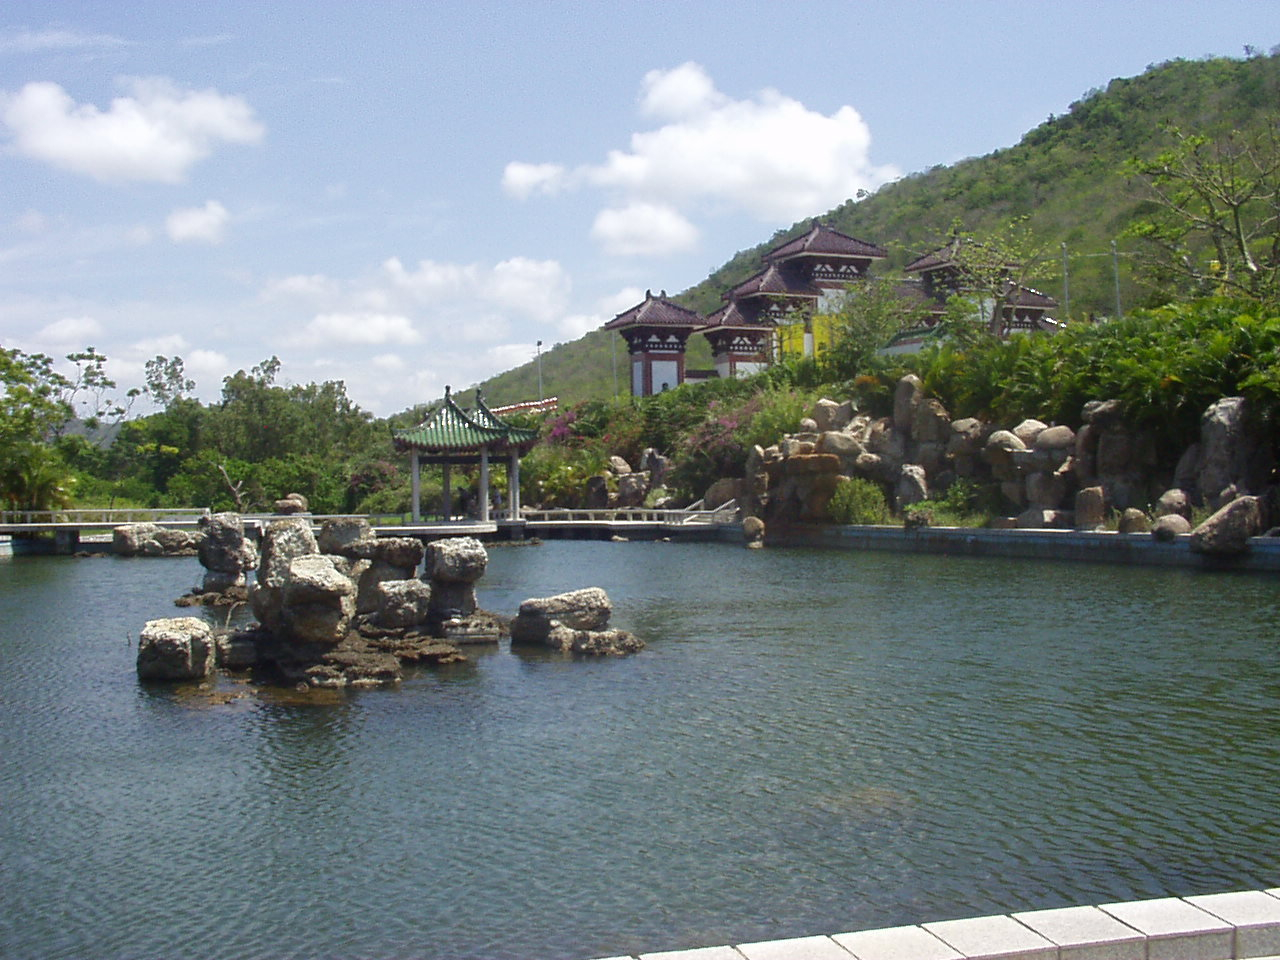 View of ornamental fish pond at Hainan, China